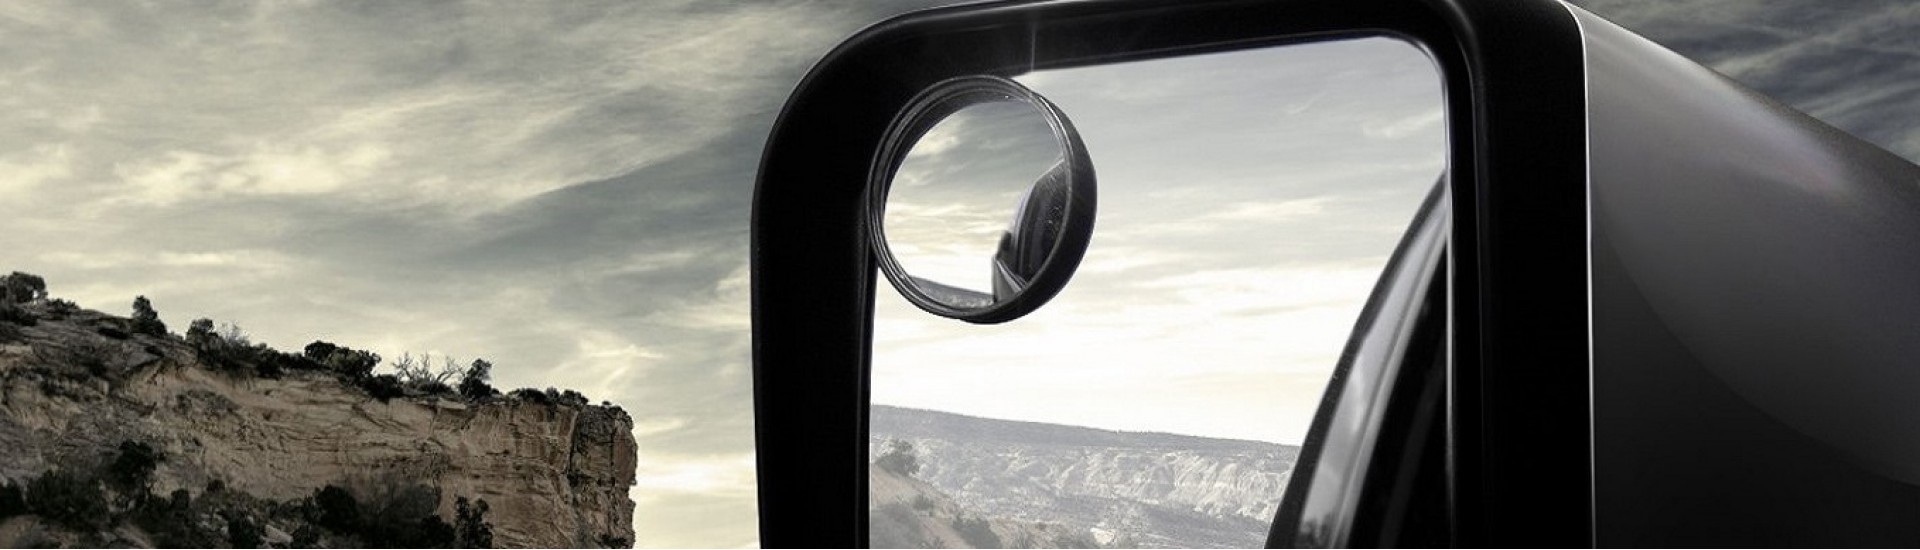 آینه نقطه کور هوندا CRV hybrid touring 